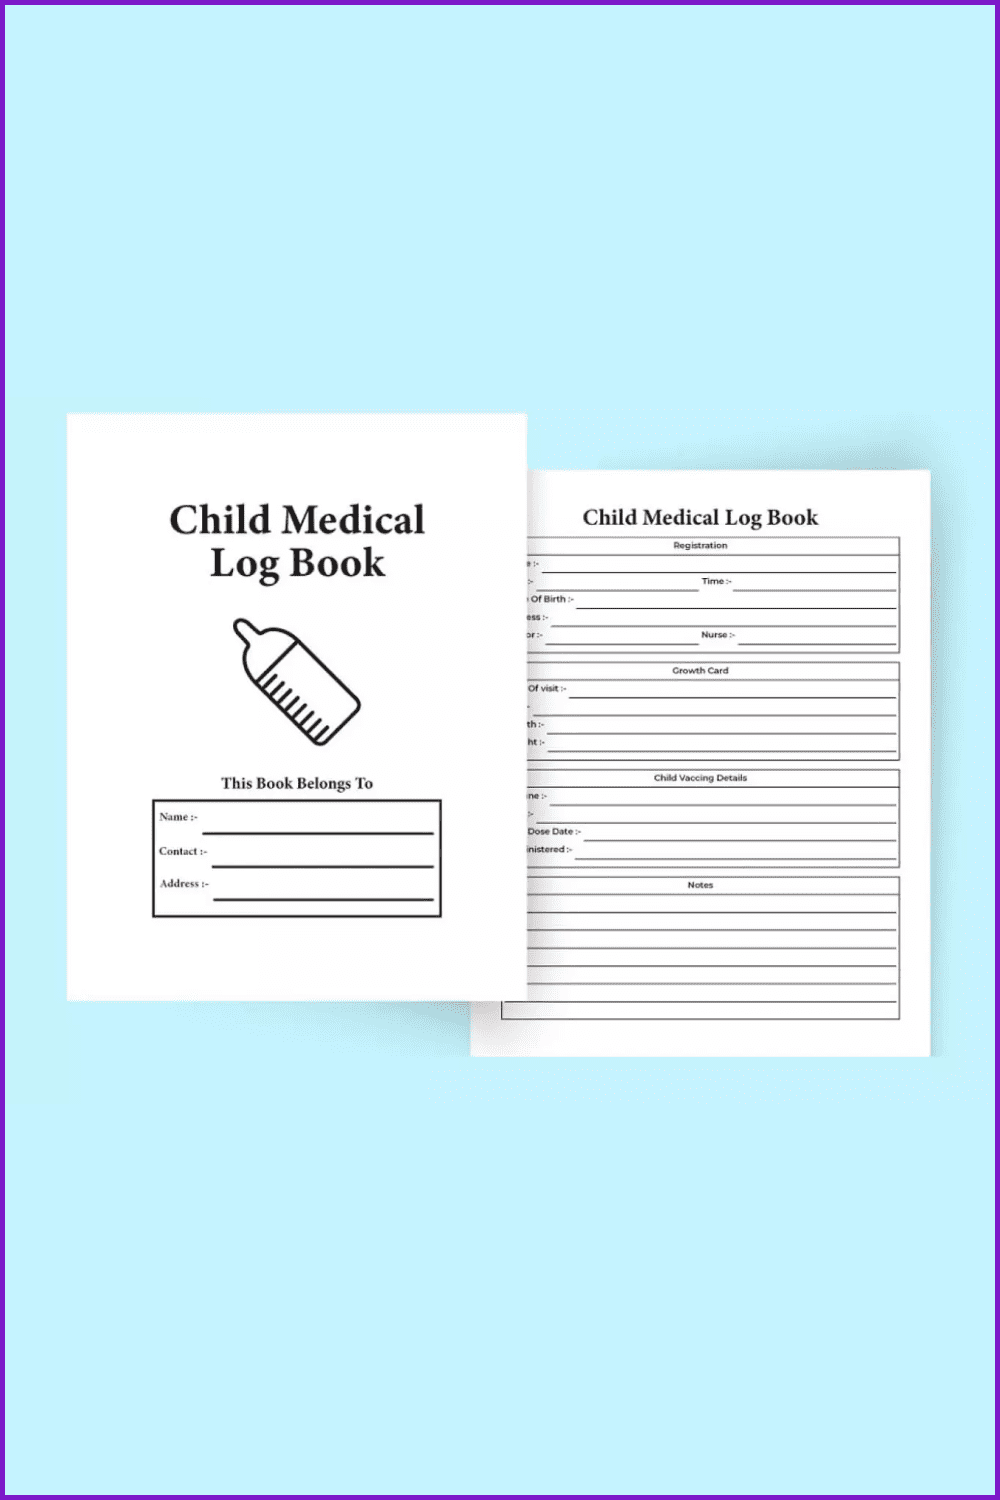 Child medical log book.